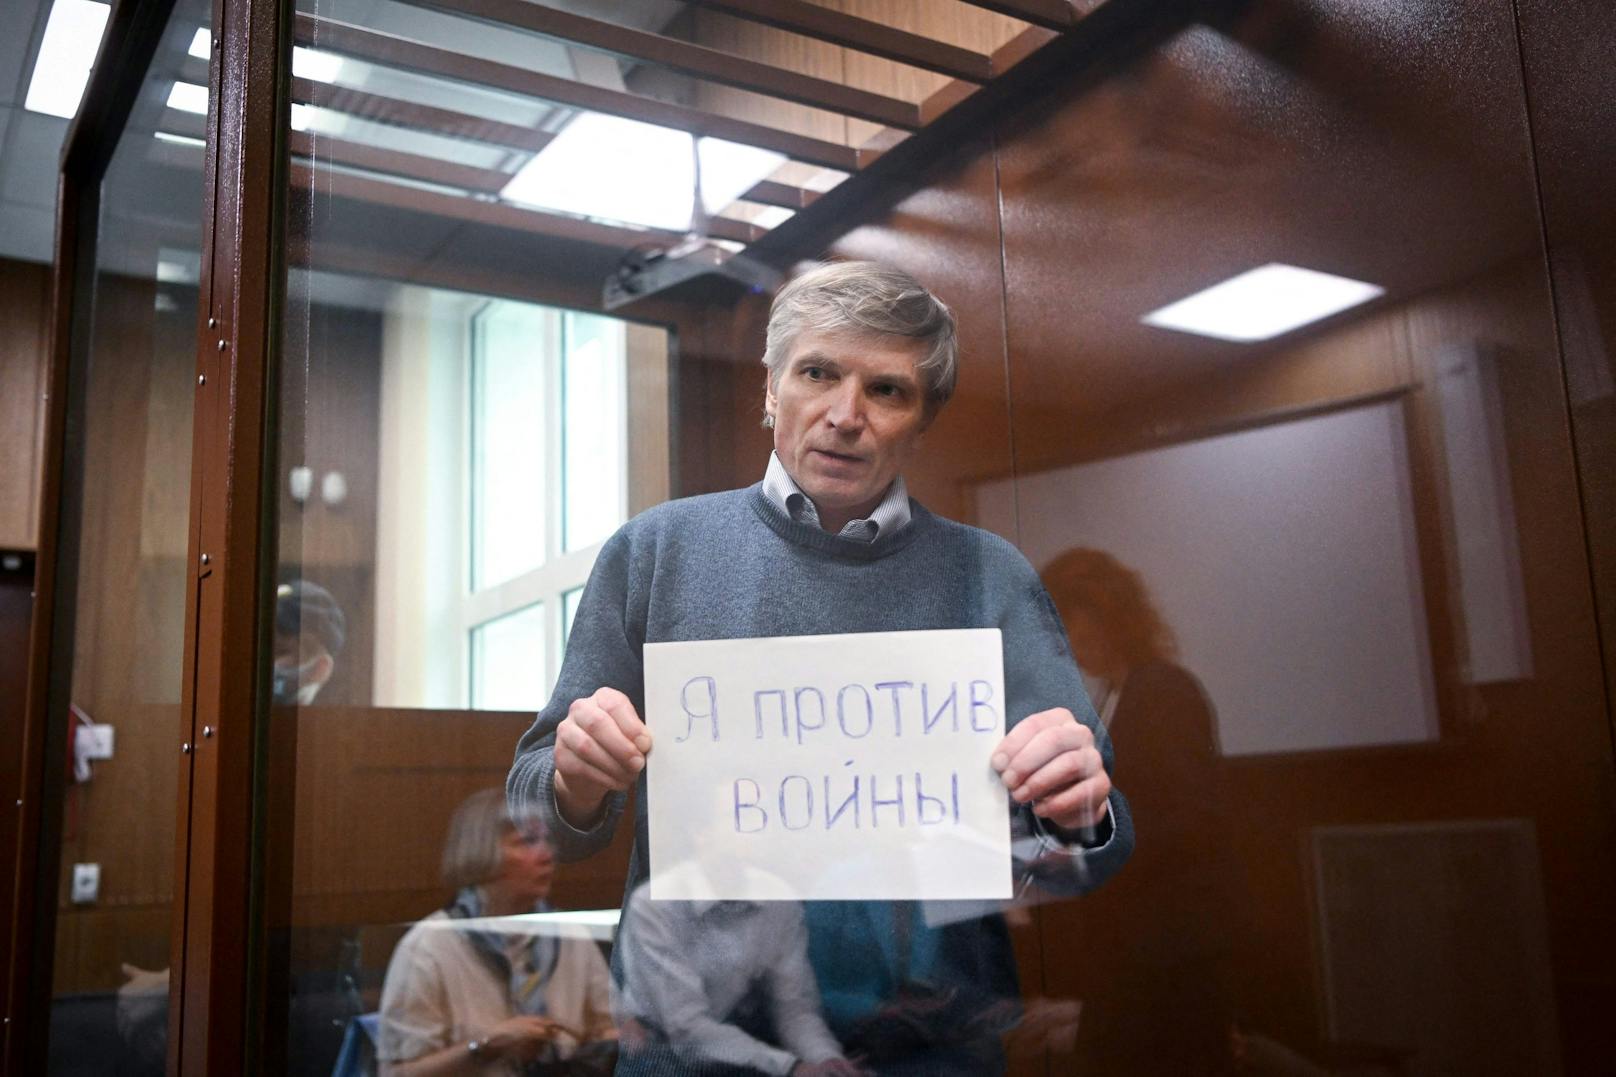 Der russische Lokalpolitiker Alexej Gorinow bleibt auch vor Gericht bei seiner Botschaft: "Nein zum Krieg".&nbsp;